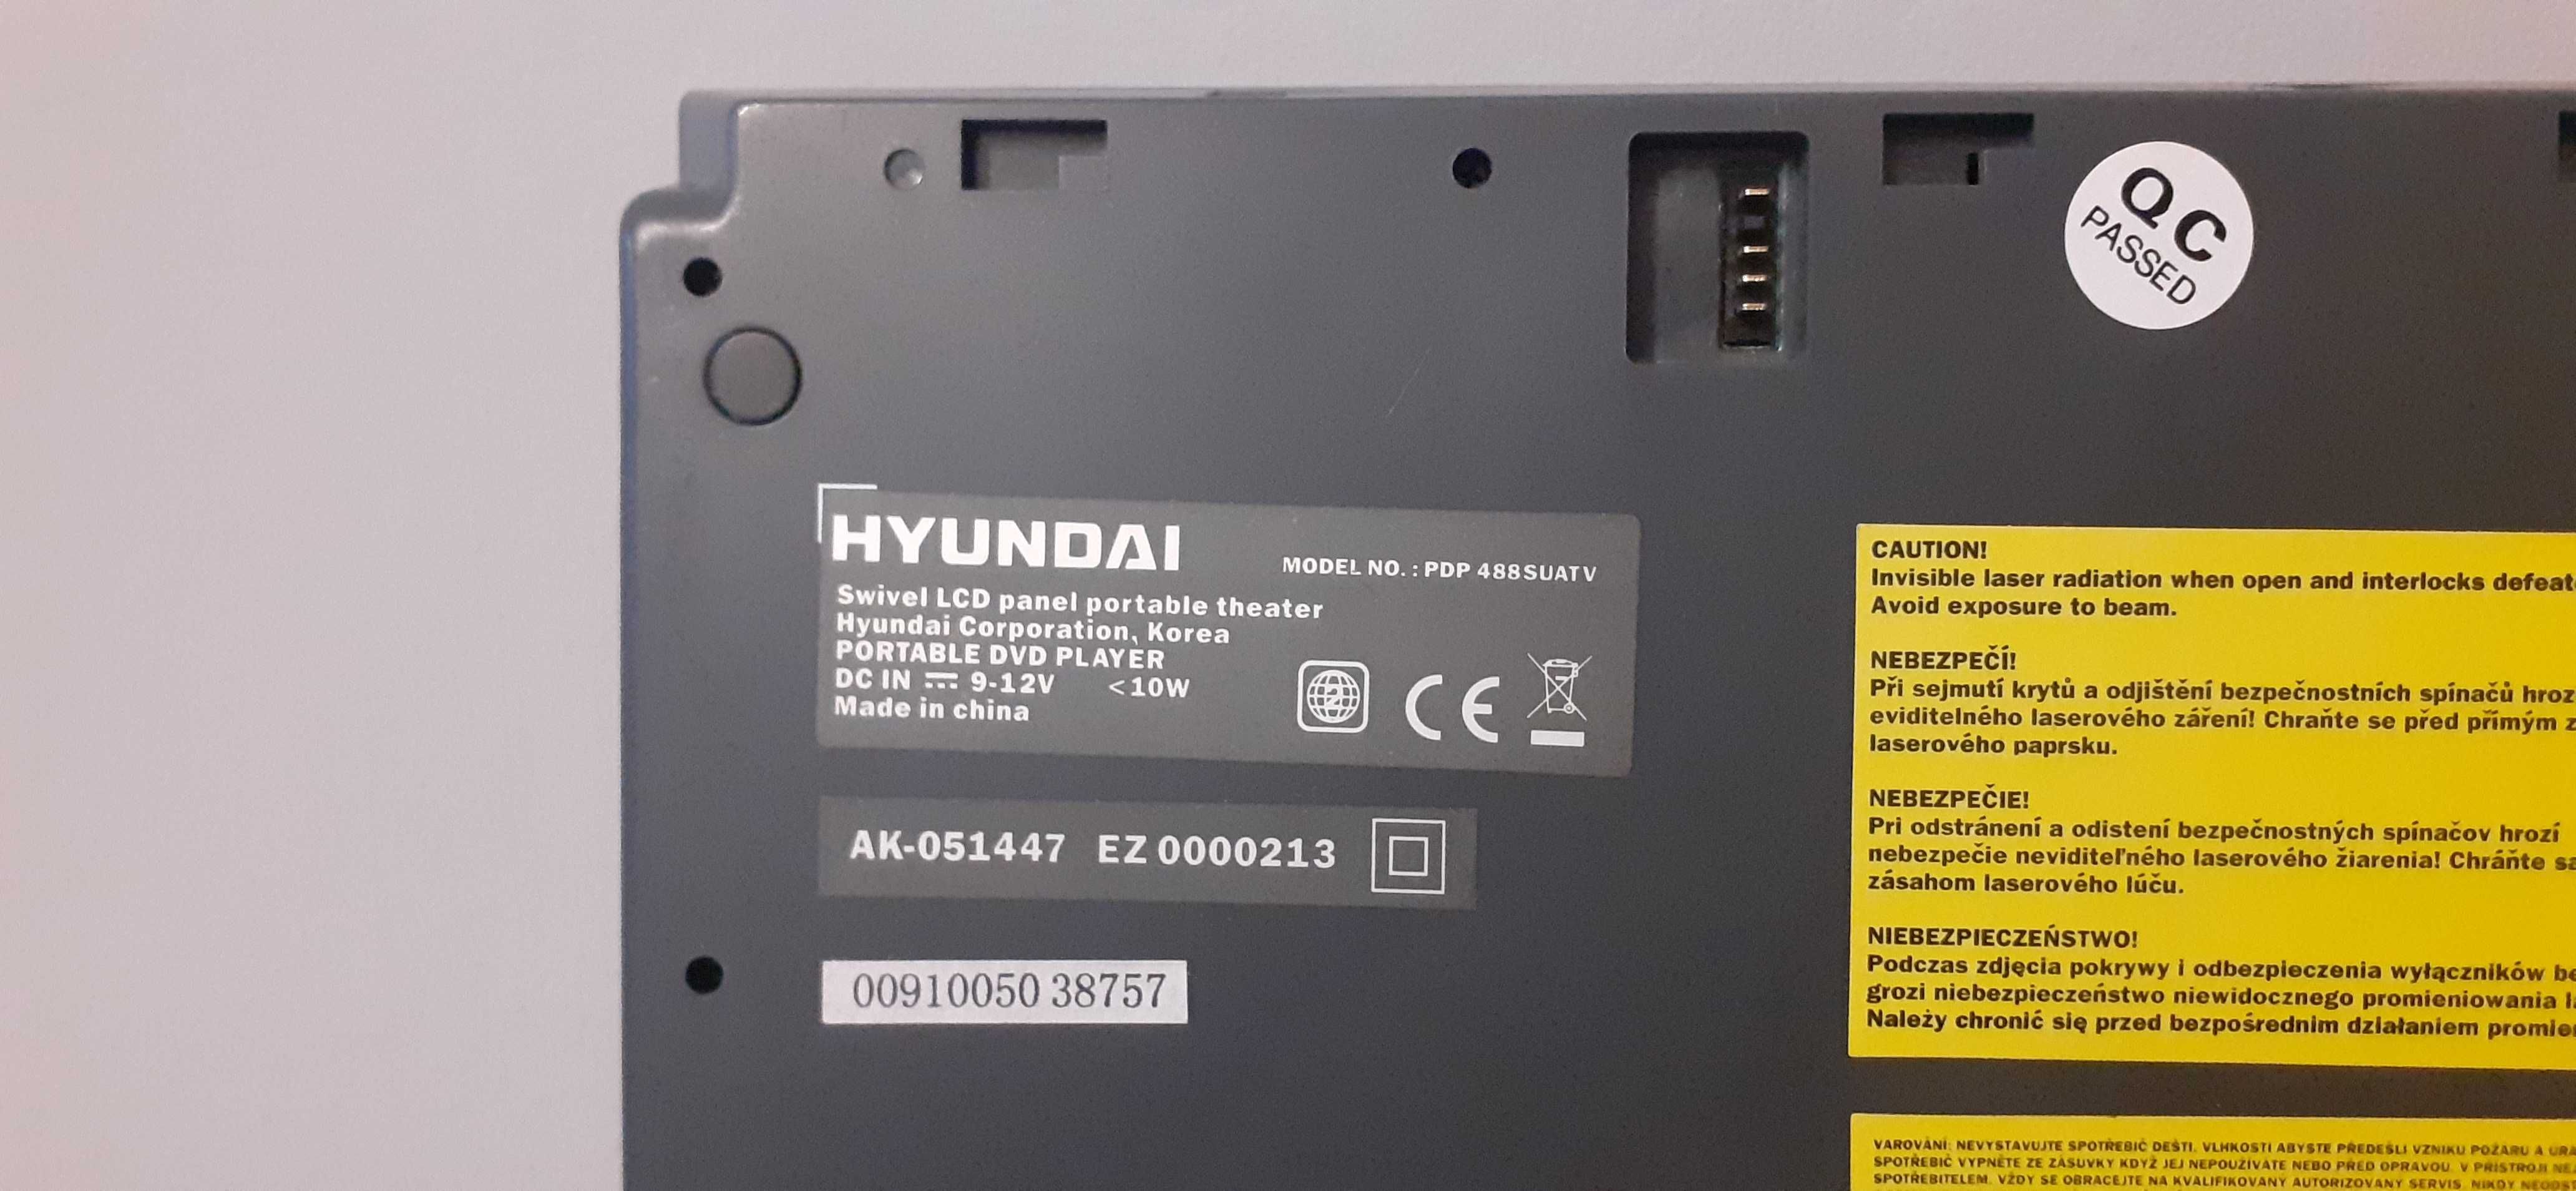 Odtwarzacz DVD Hyundai PDP488SUATV